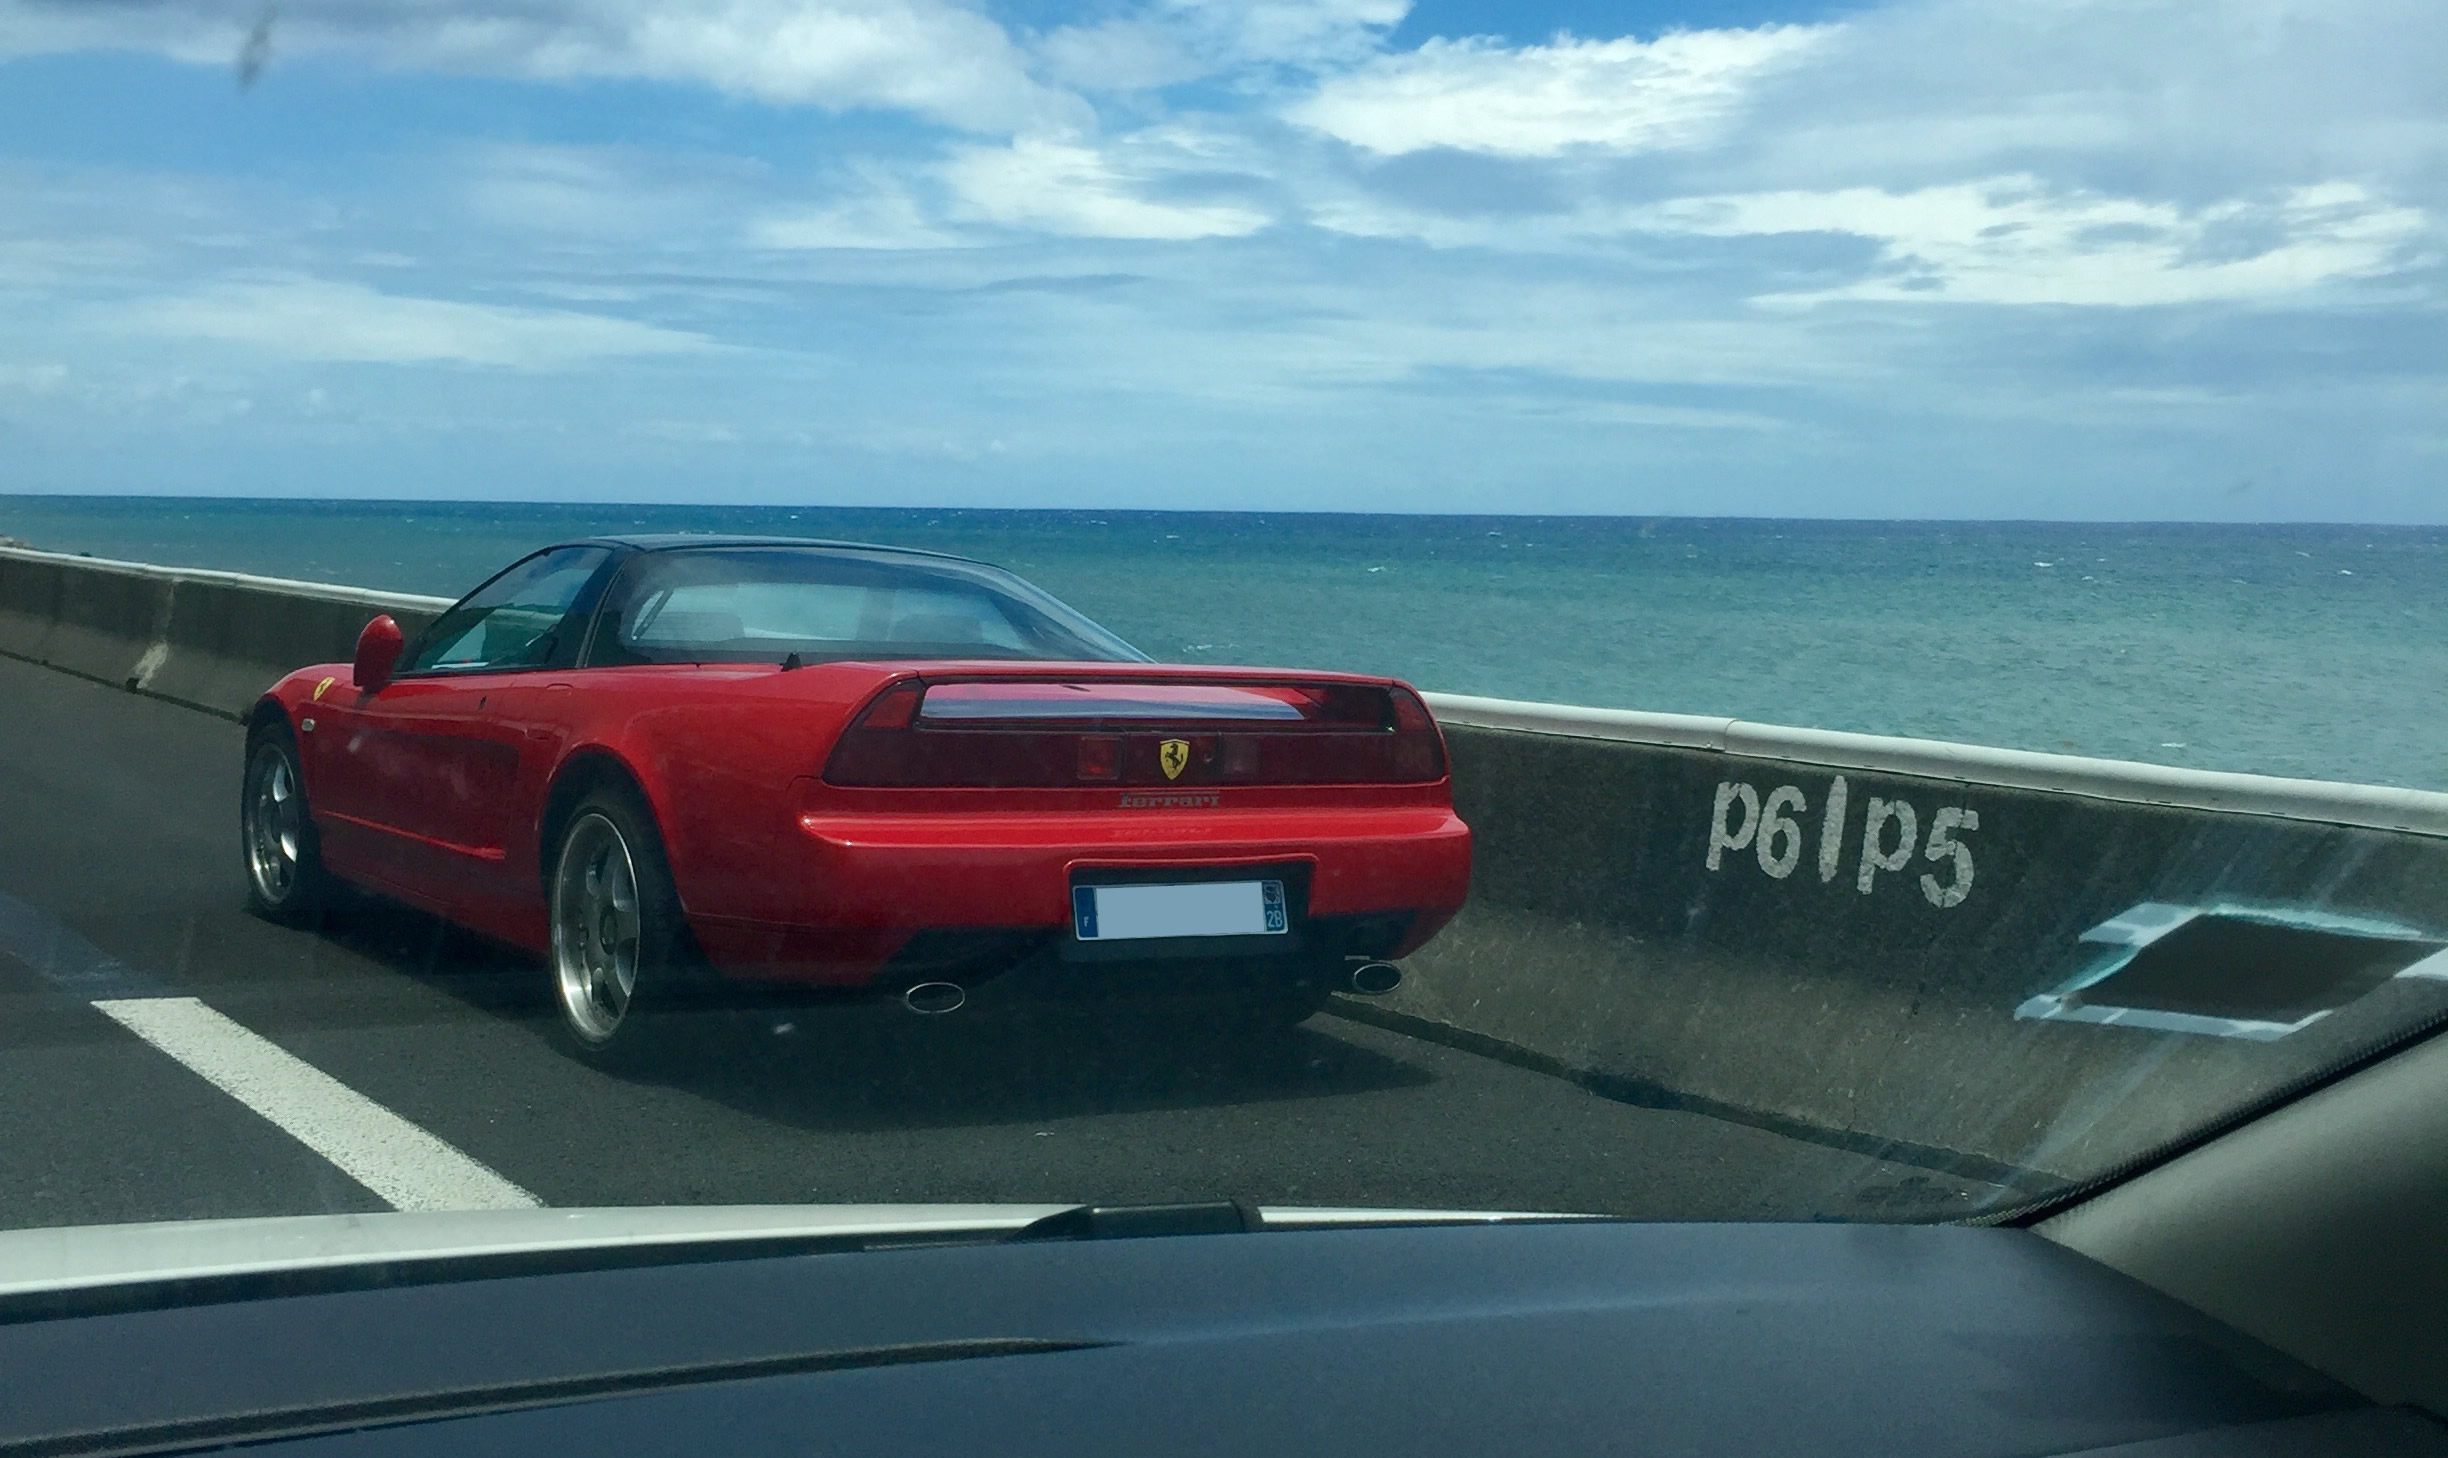 Une Ferrari en panne sur la route en corniche